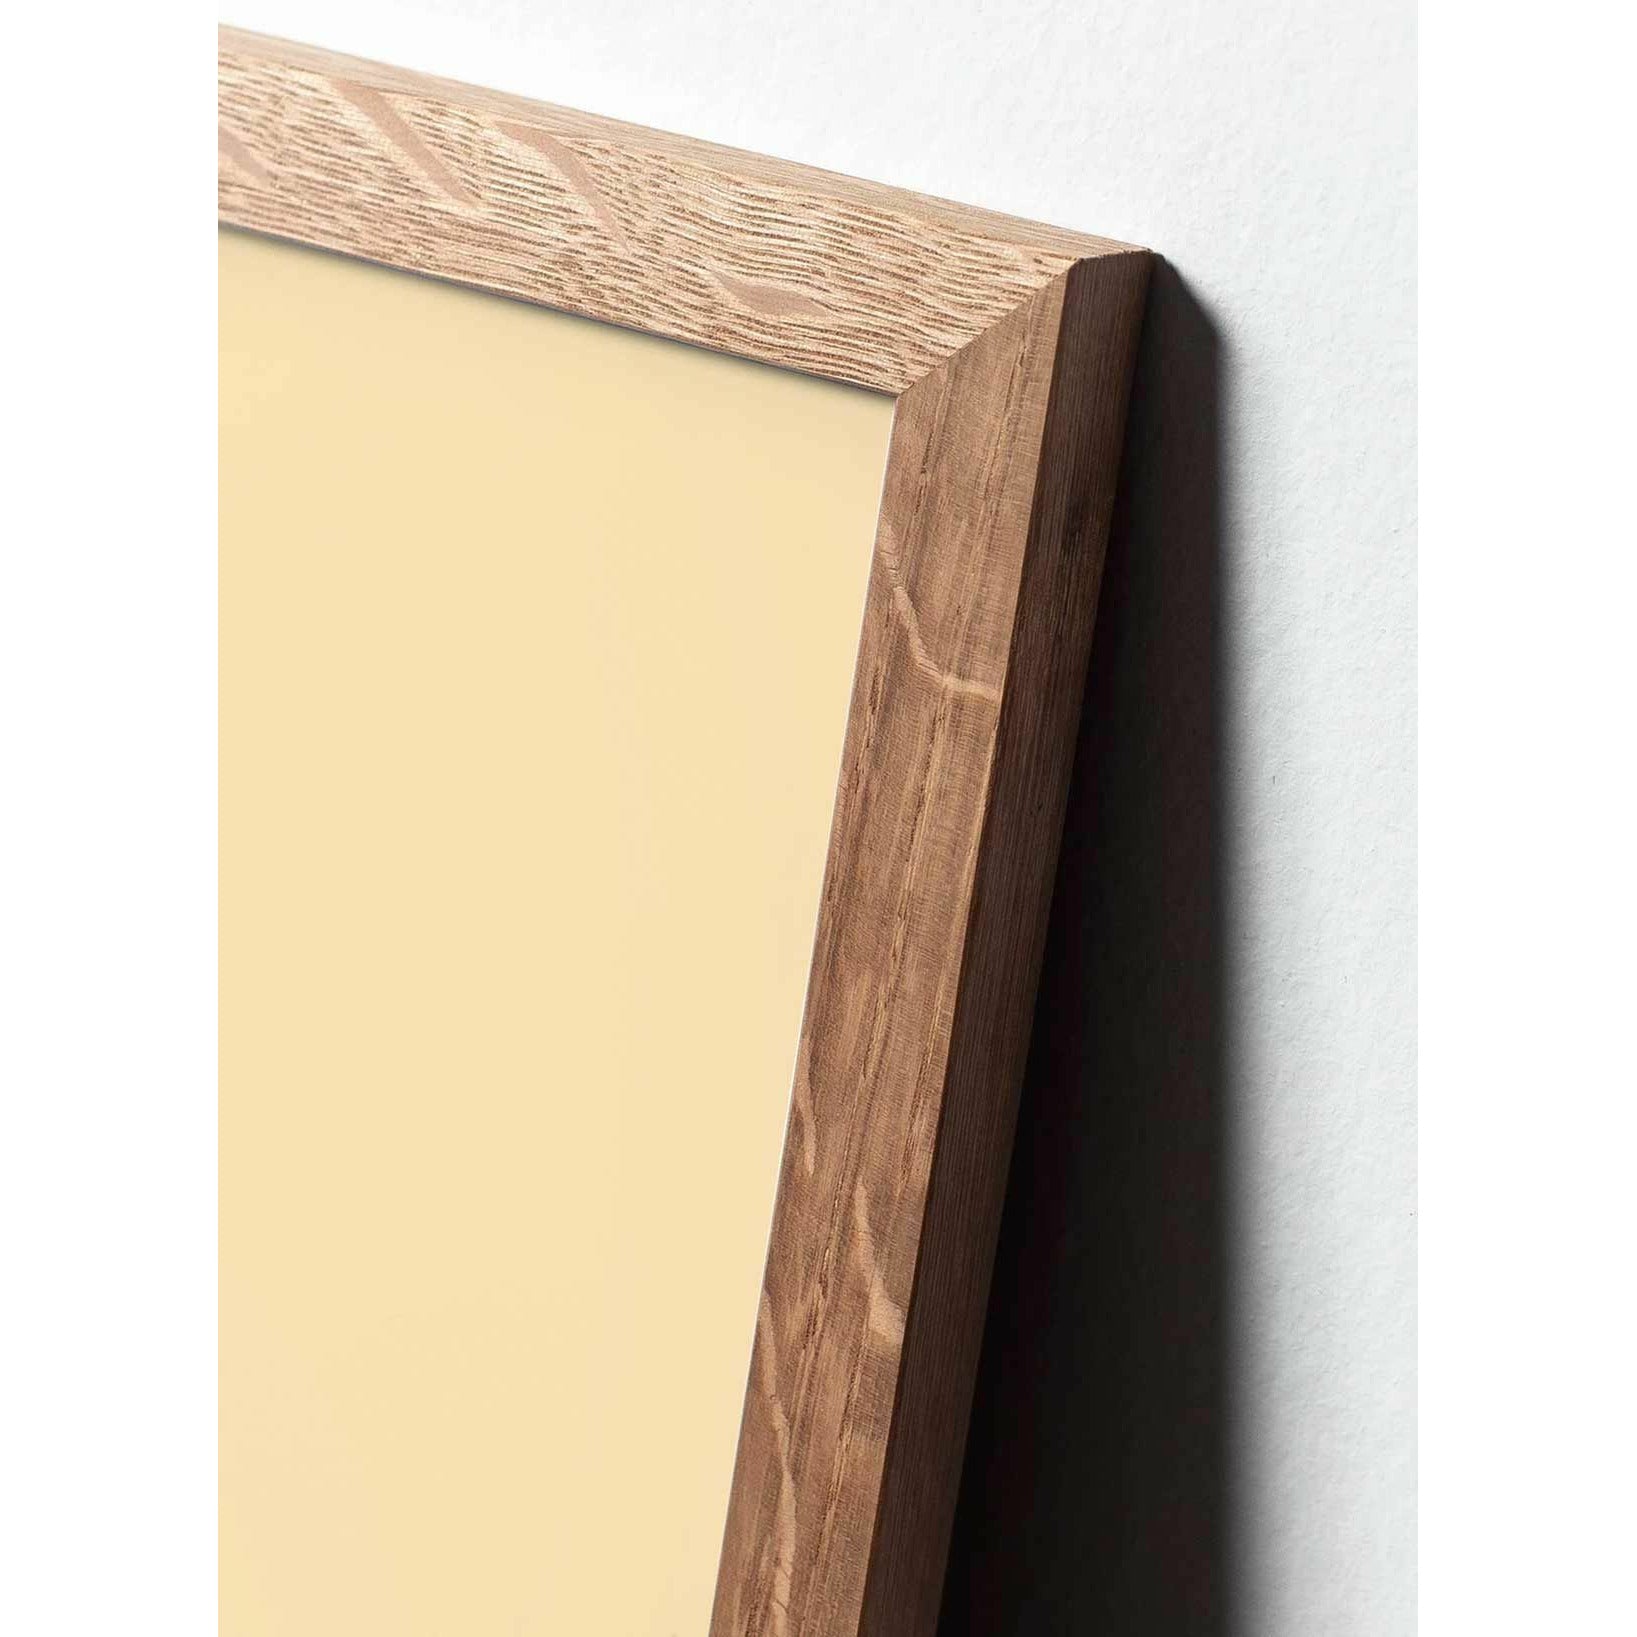 Póster clásico de Swan, marco hecho de madera clara 50x70 cm, fondo blanco/blanco